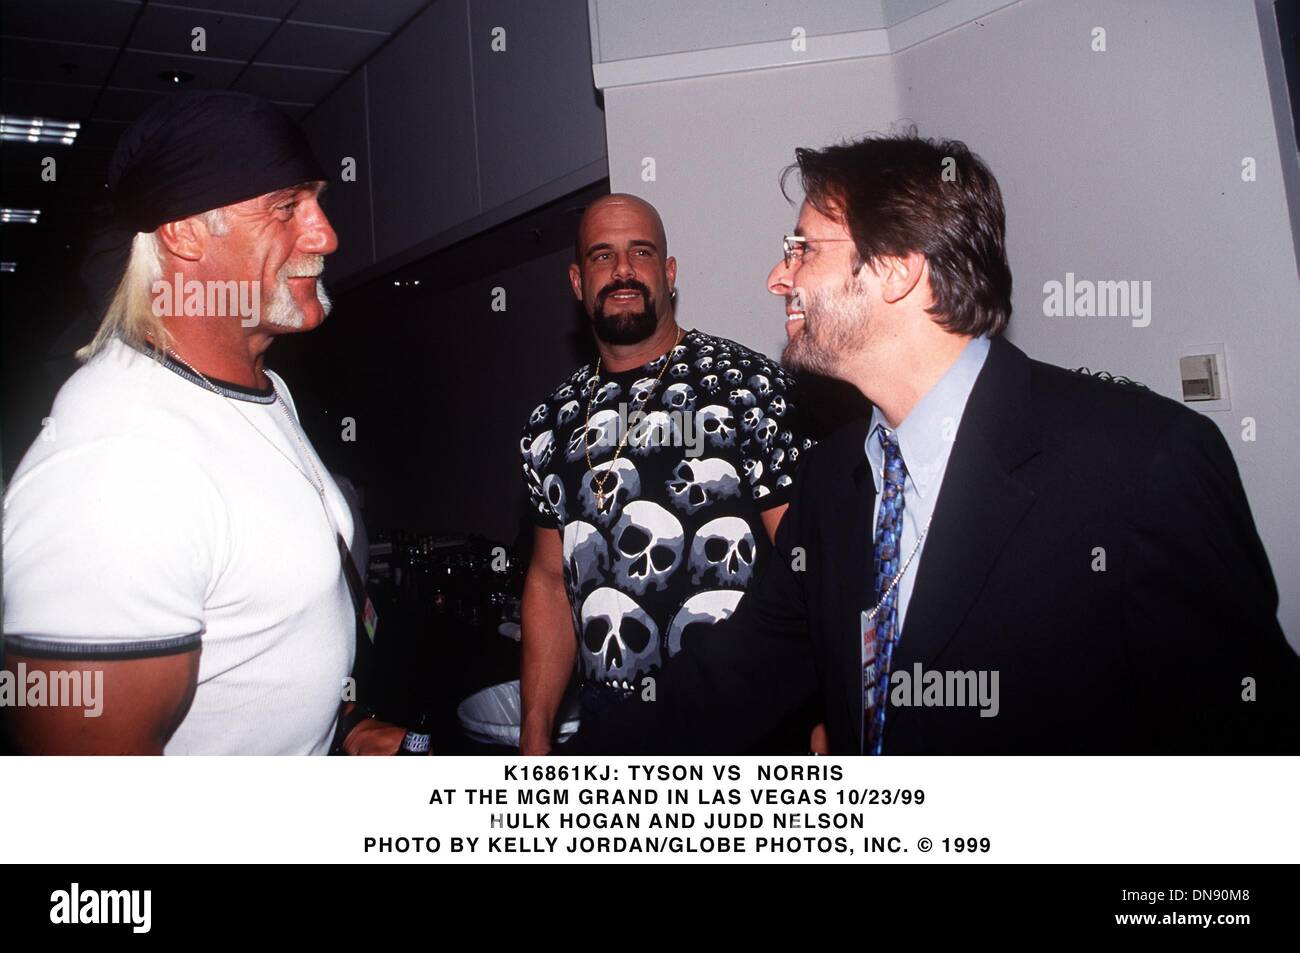 Le 23 octobre 1999 - K16861KJ : TYSON VS NORRIS .AU MGM GRAND DE LAS VEGAS 10/23/99.Hulk Hogan et JUDD NELSON. KELLY JORDAN/(1999 Image : © Crédit Photos Globe/ZUMAPRESS.com) Banque D'Images